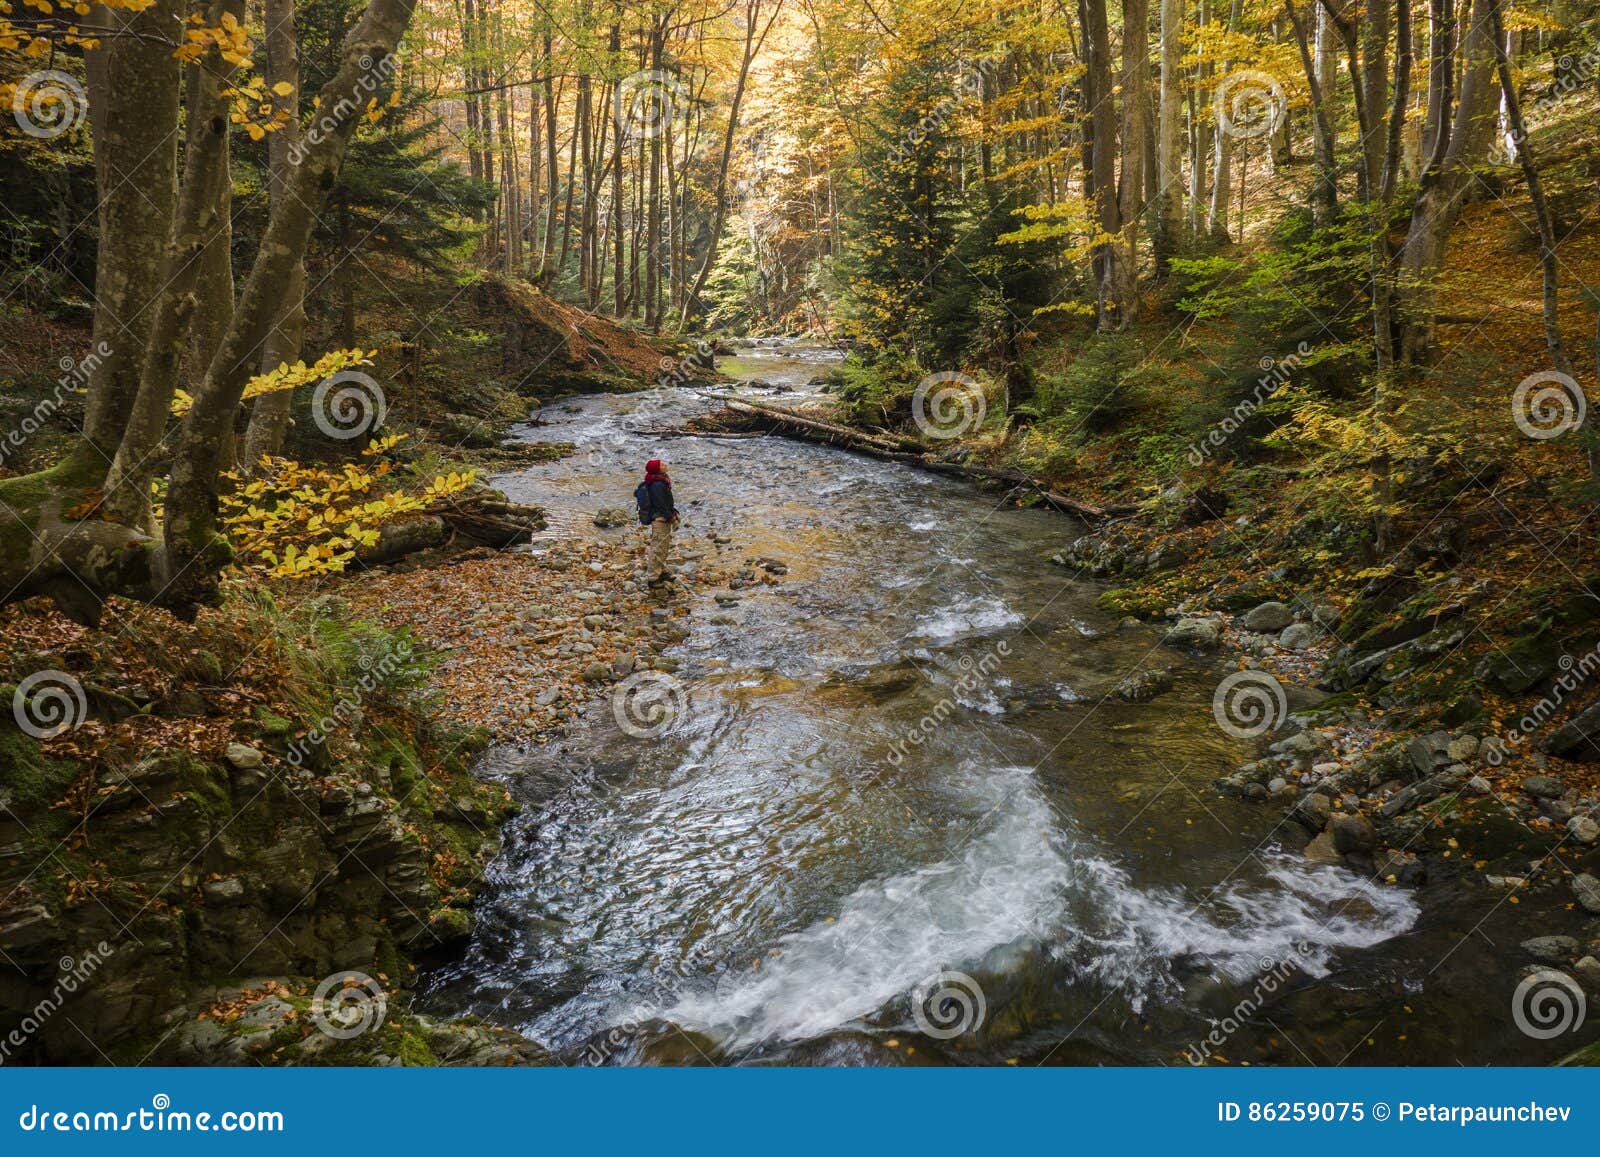 Autumn exploration stock image. Image of lifestyle, peaceful - 86259075